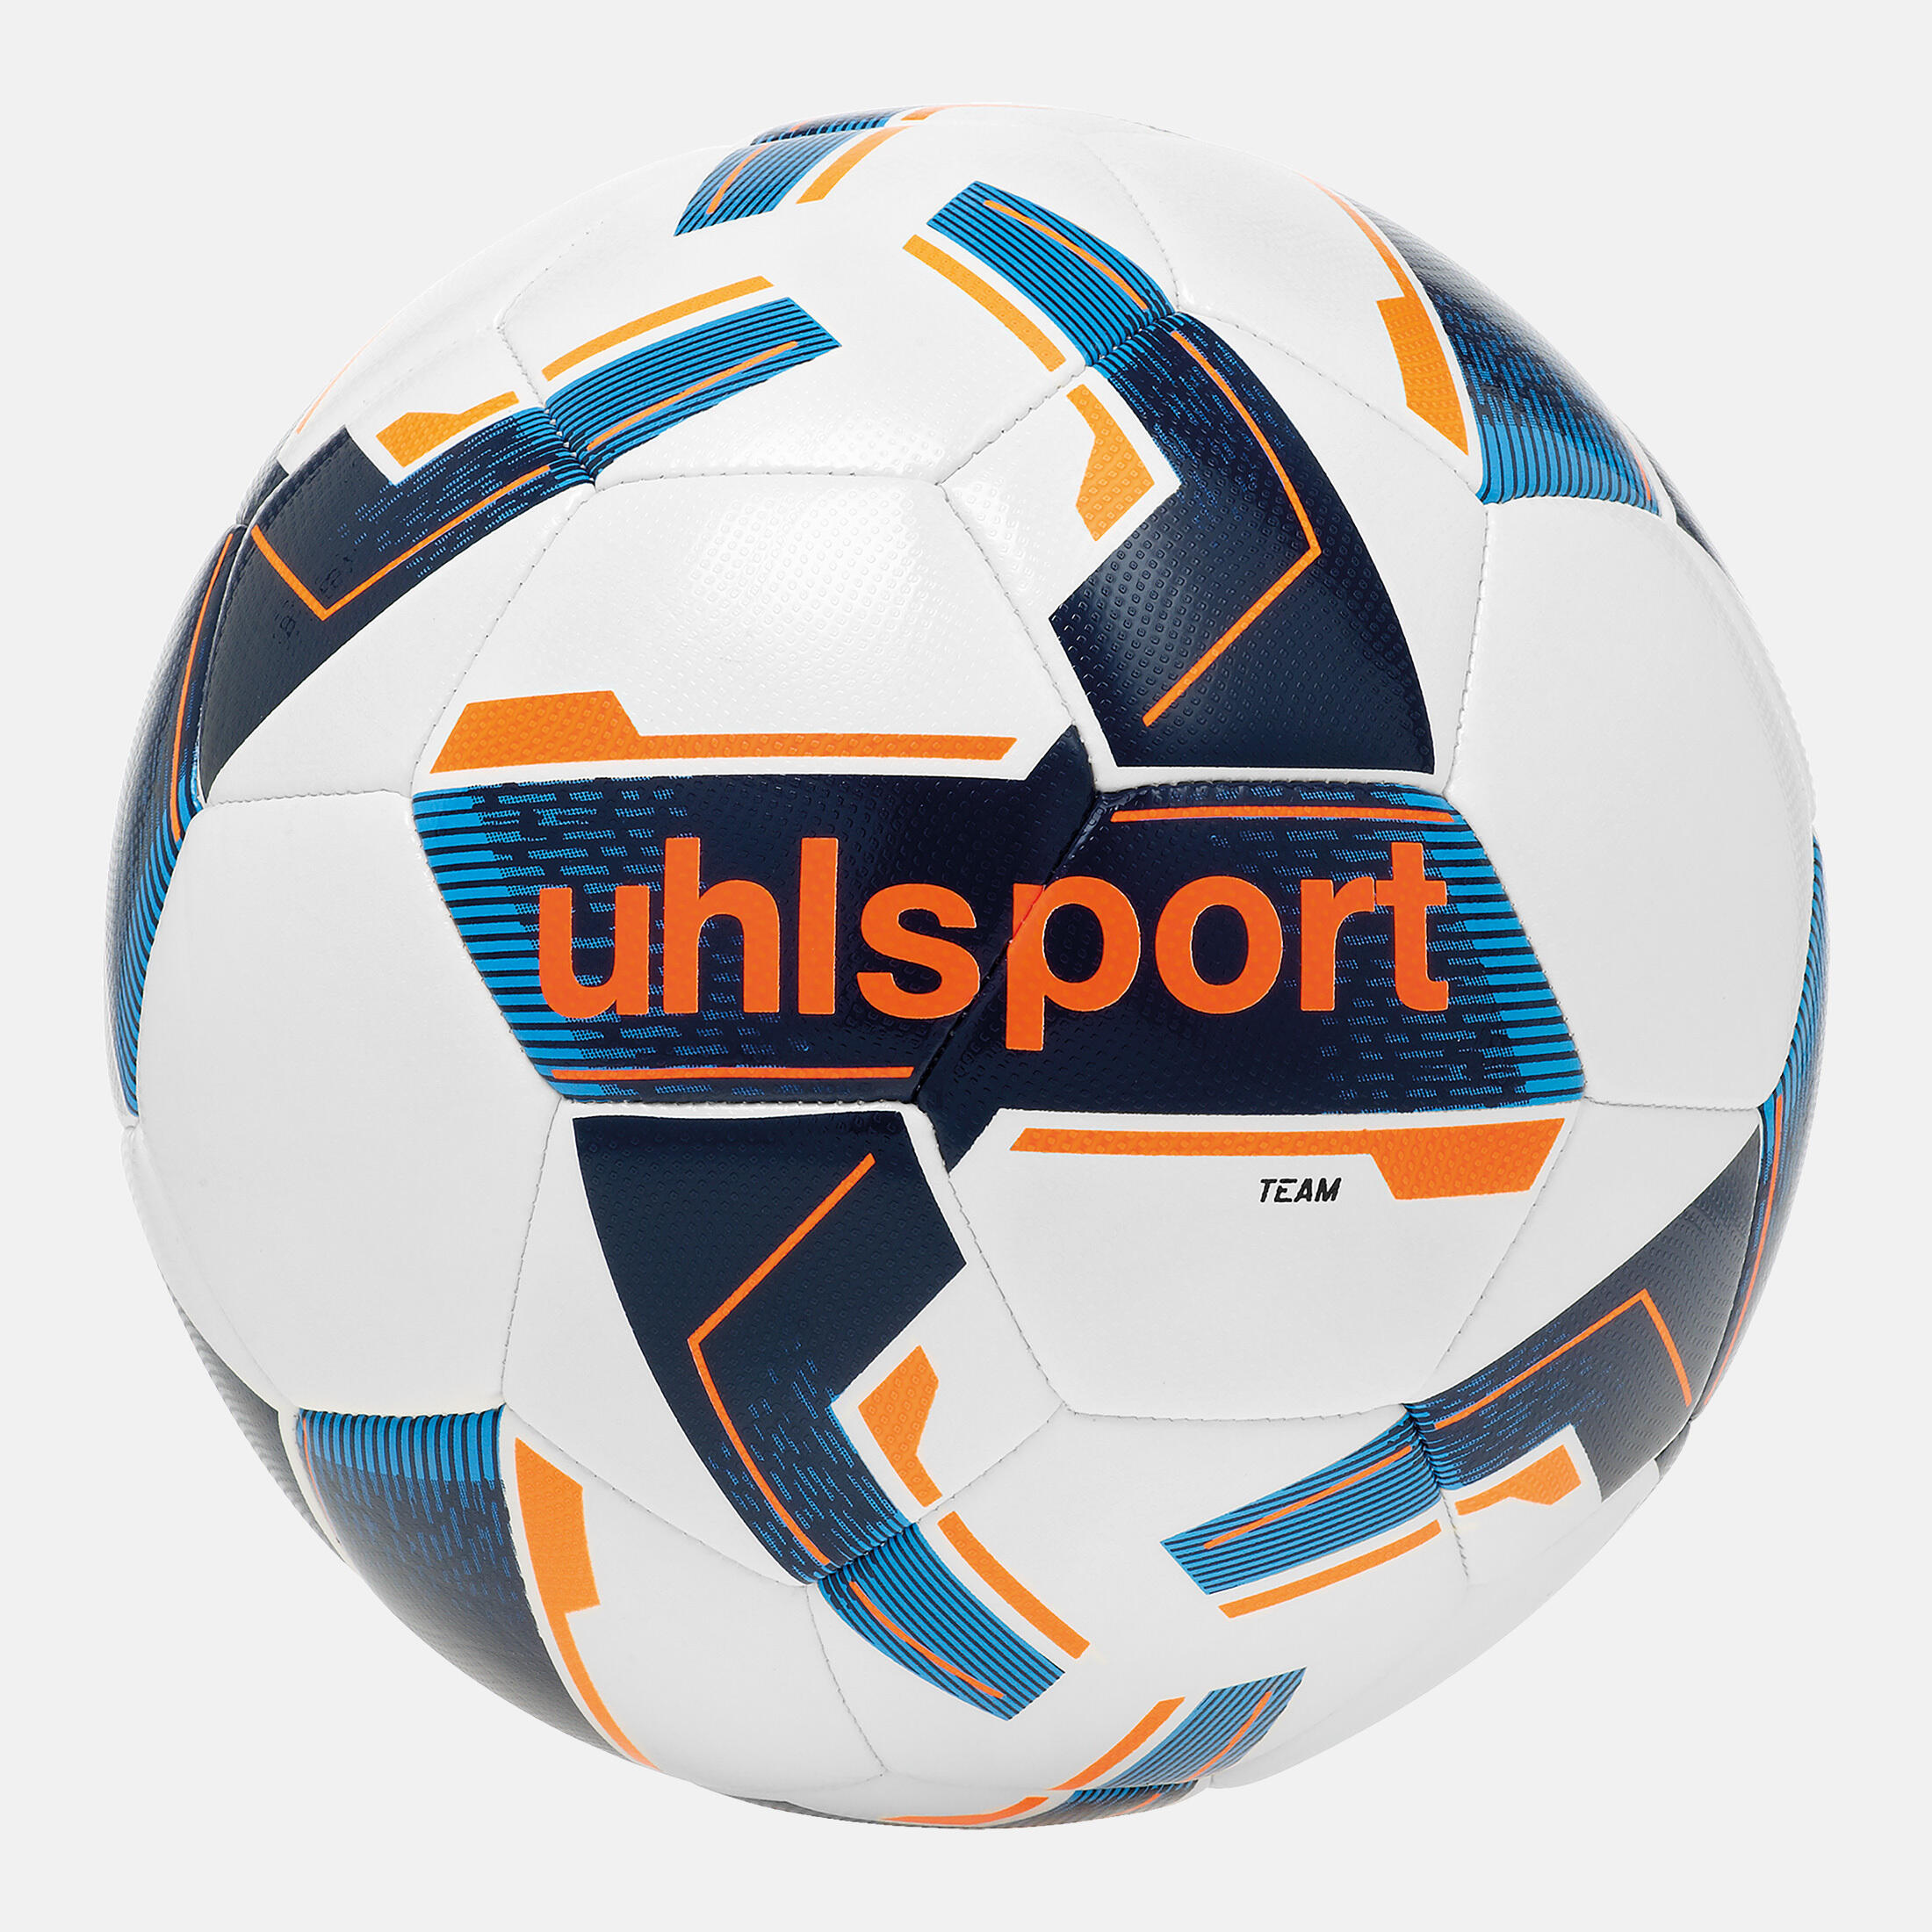 UHLSPORT Uhlsport Team Training Football Size 5 - White